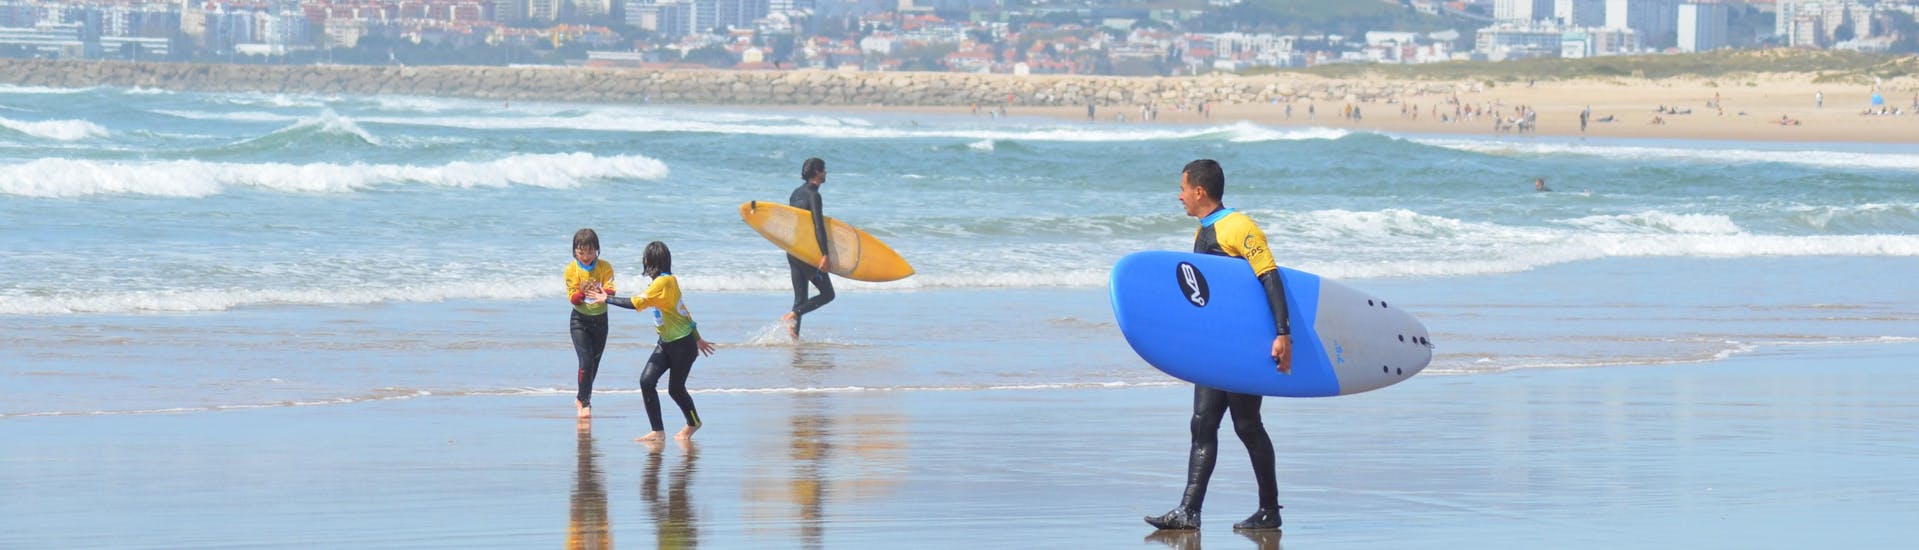 Persoon die surfplank draagt van Portugal Surf School.